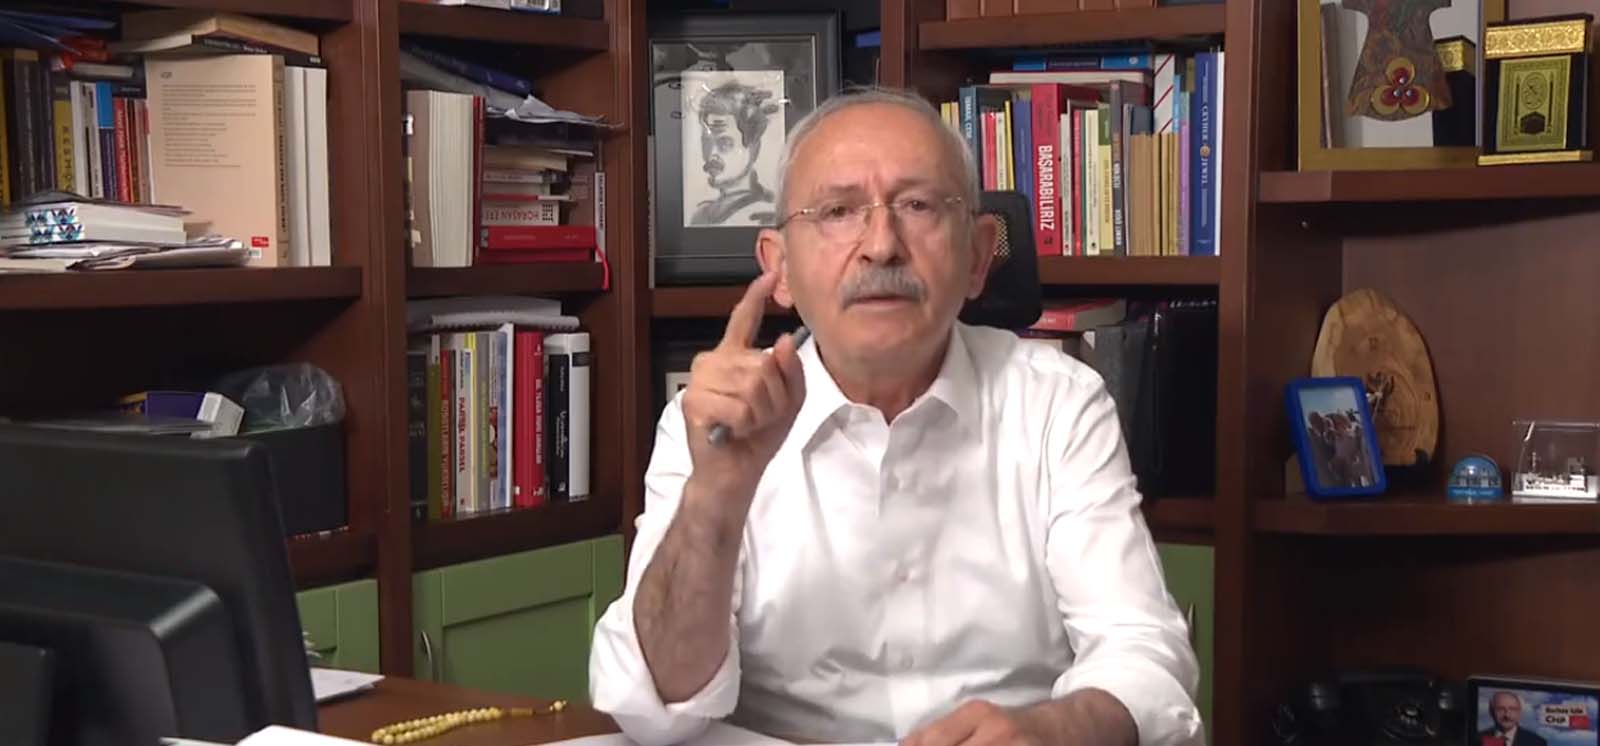 Hiçbir belge sunamayan CHP lideri Kılıçdaroğlu'na AK Parti sözcüsü Çelik'ten sert tepki! İddiası gayri ahlaki